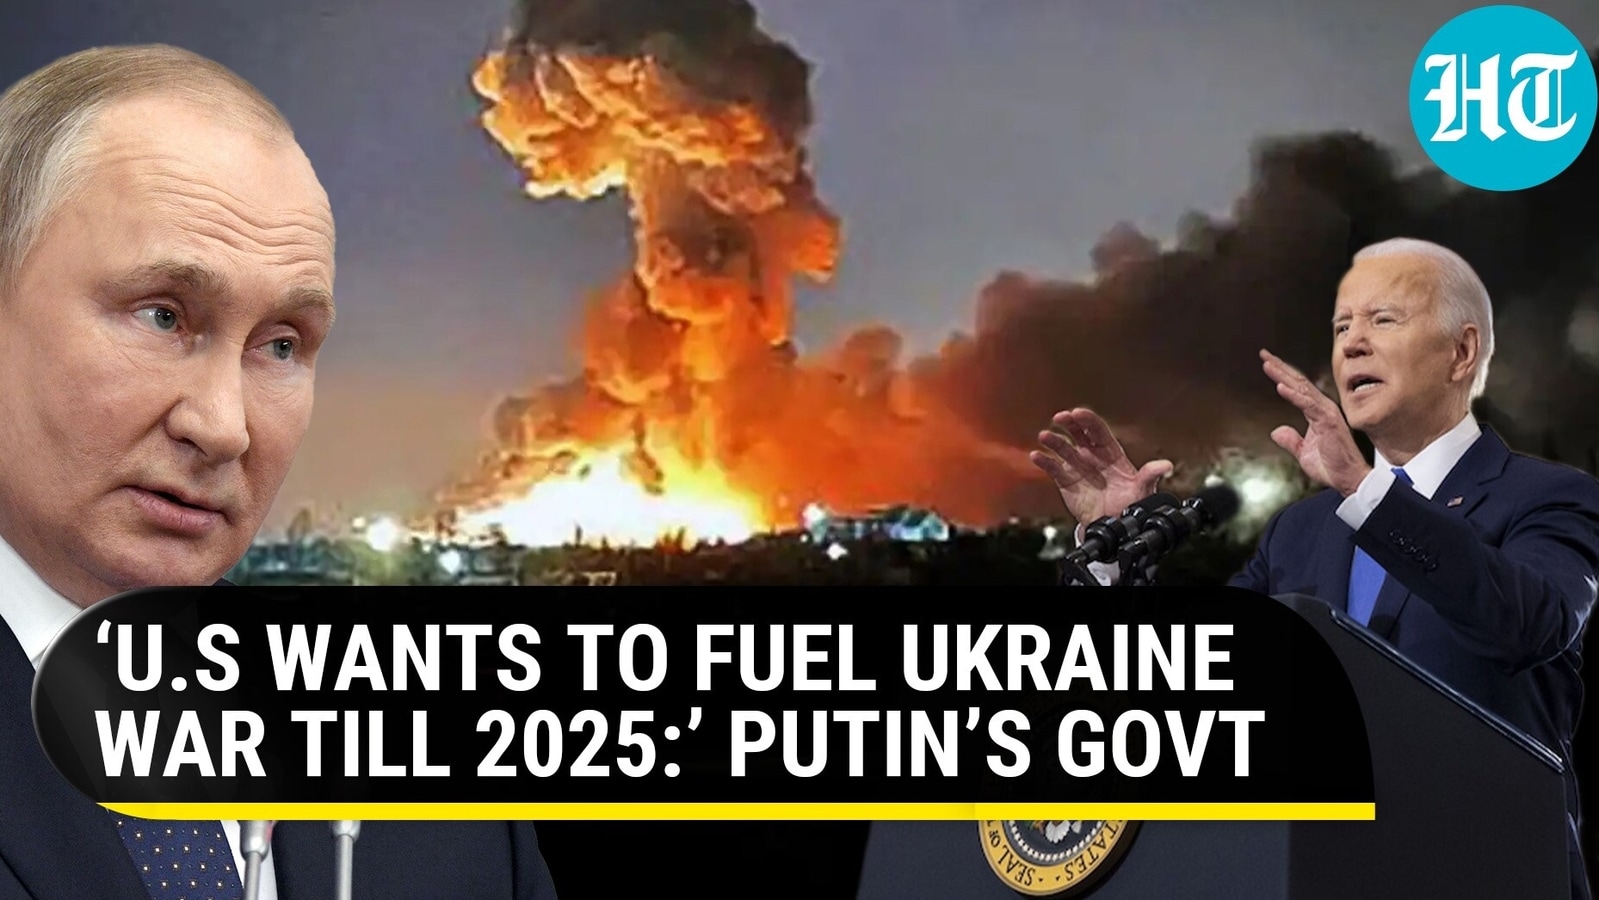 Putin exposes Biden’s ‘doublespeak’; Russia claims U.S wants Ukraine war to go on till 2025